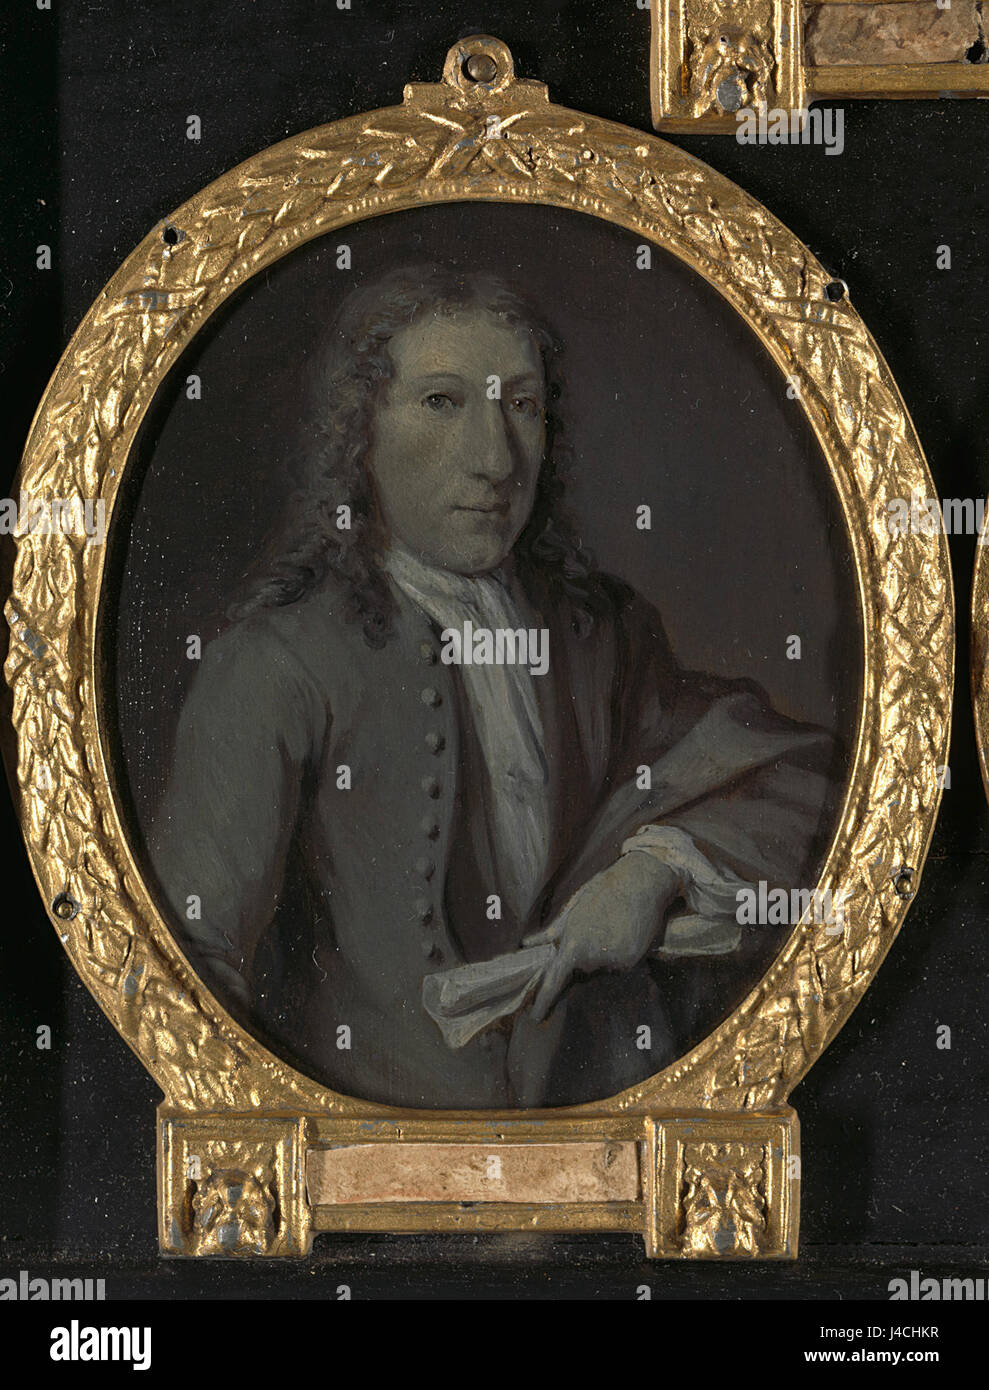 Portret van Gijsbert Tijssens, toneelschrijver te Amsterdam Rijksmuseum SK A 4616 Stock Photo